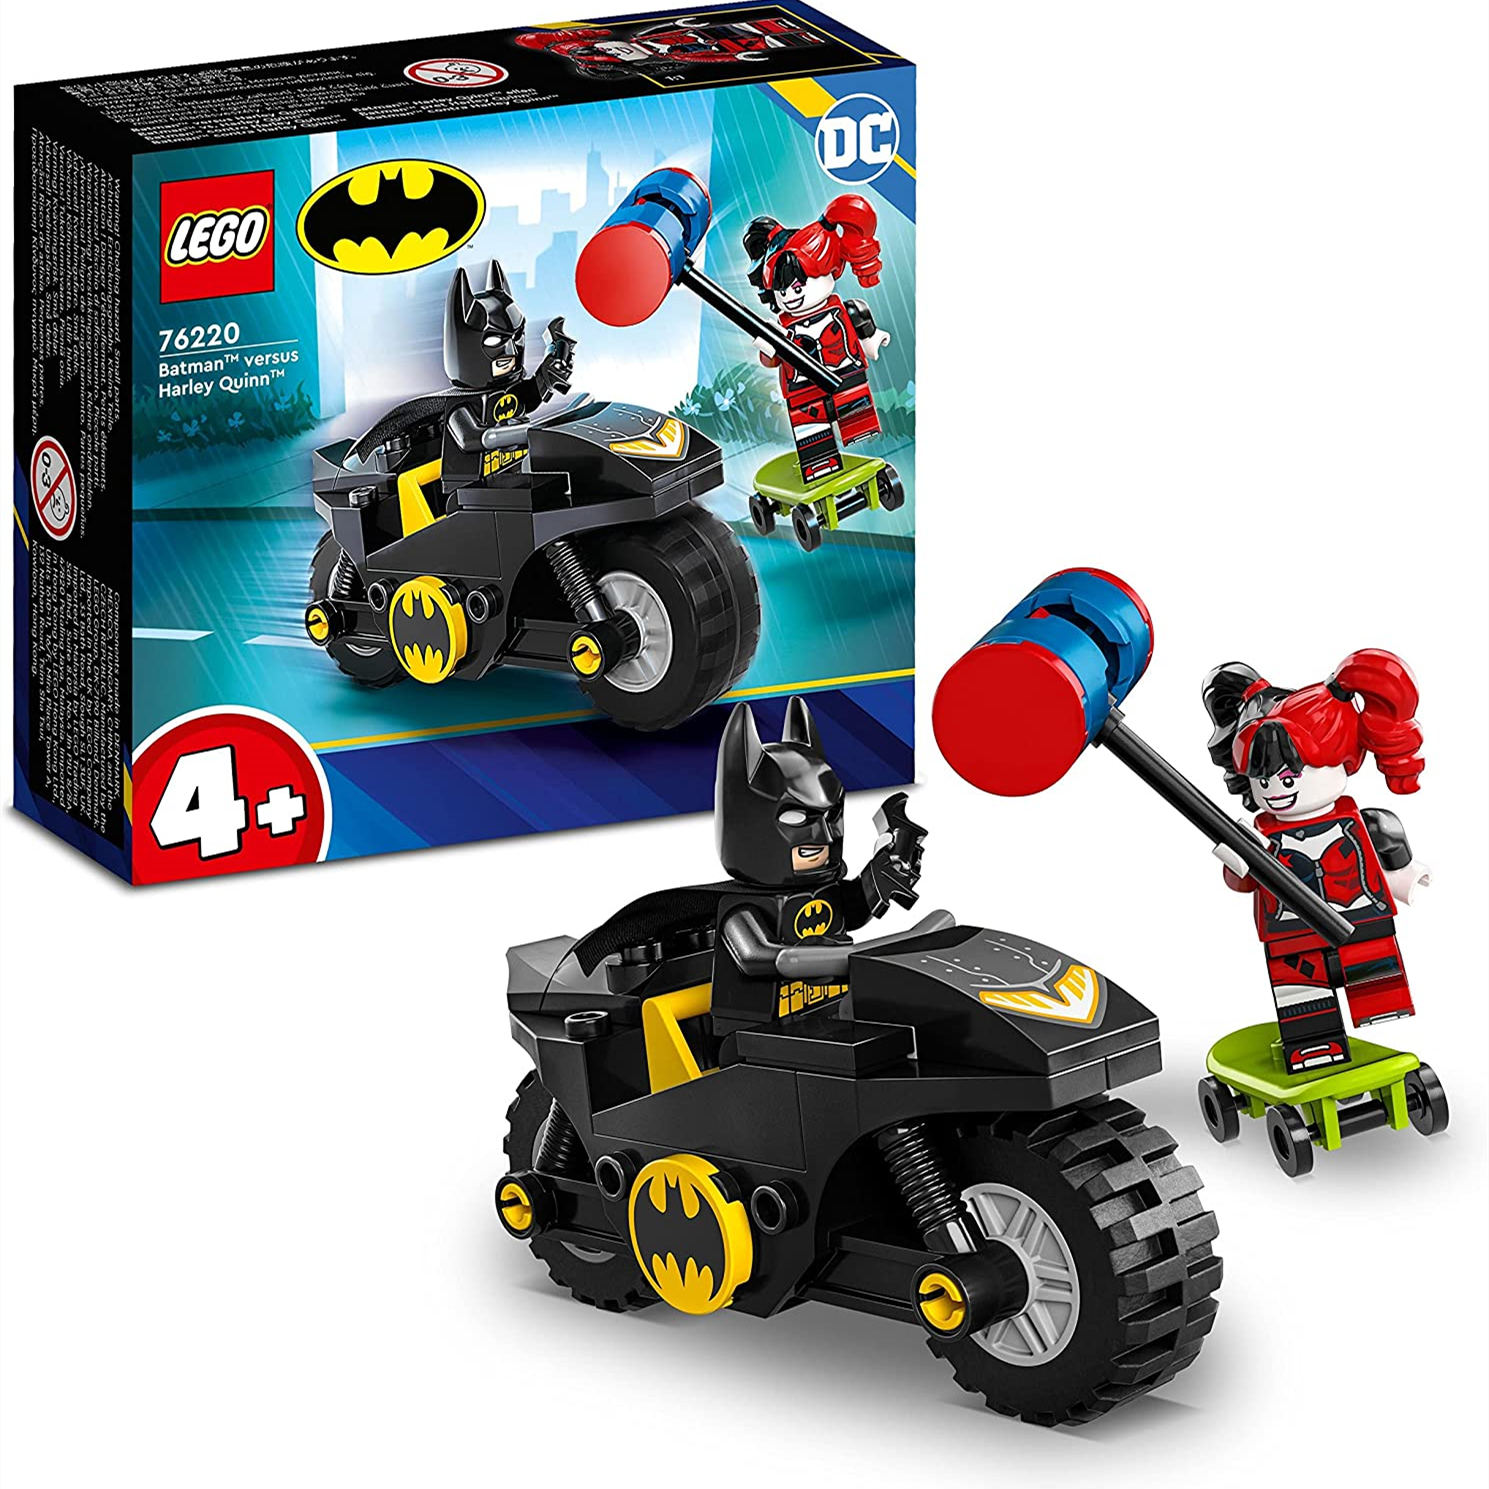 孩子也能get到收藏的快乐！LEGO 乐高超级英雄系列76220小丑女蝙蝠侠